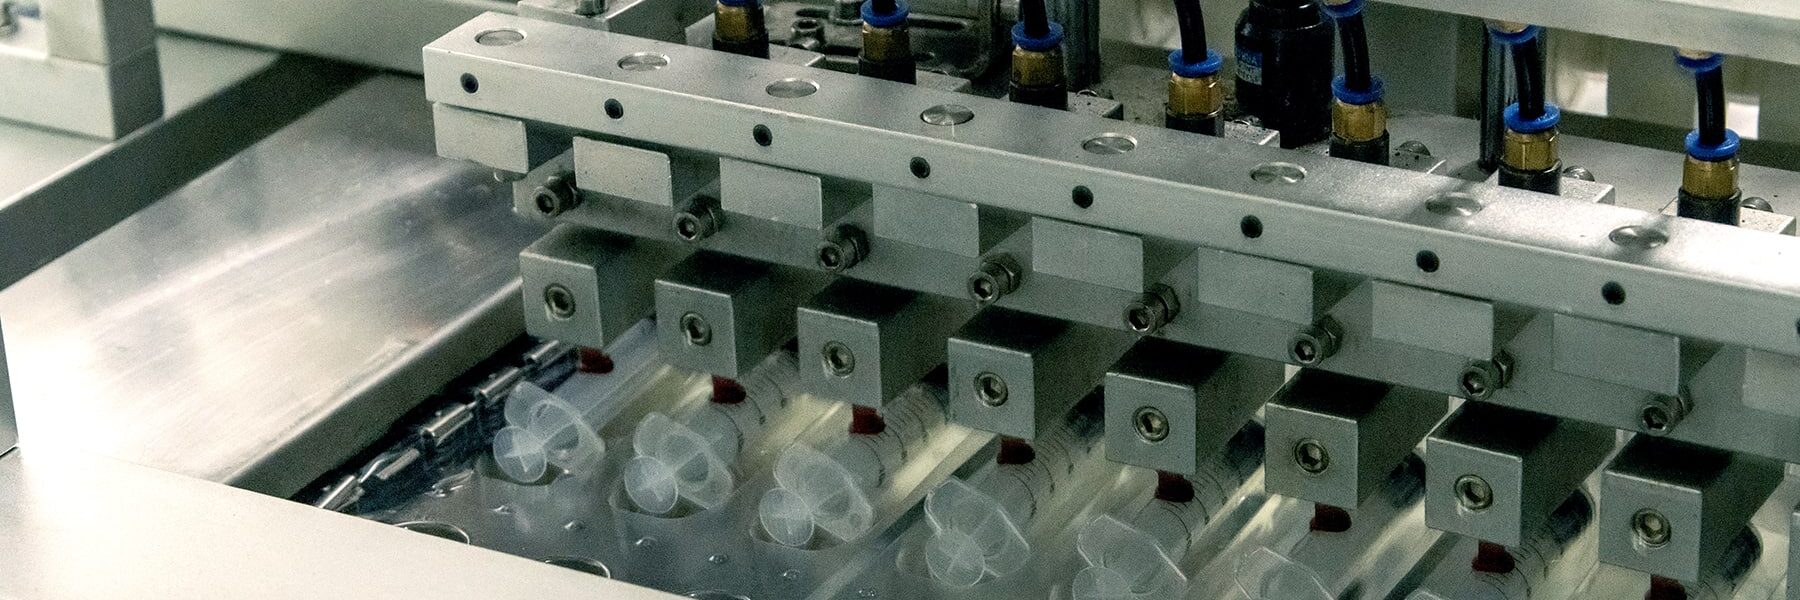 syringes in lab equipment